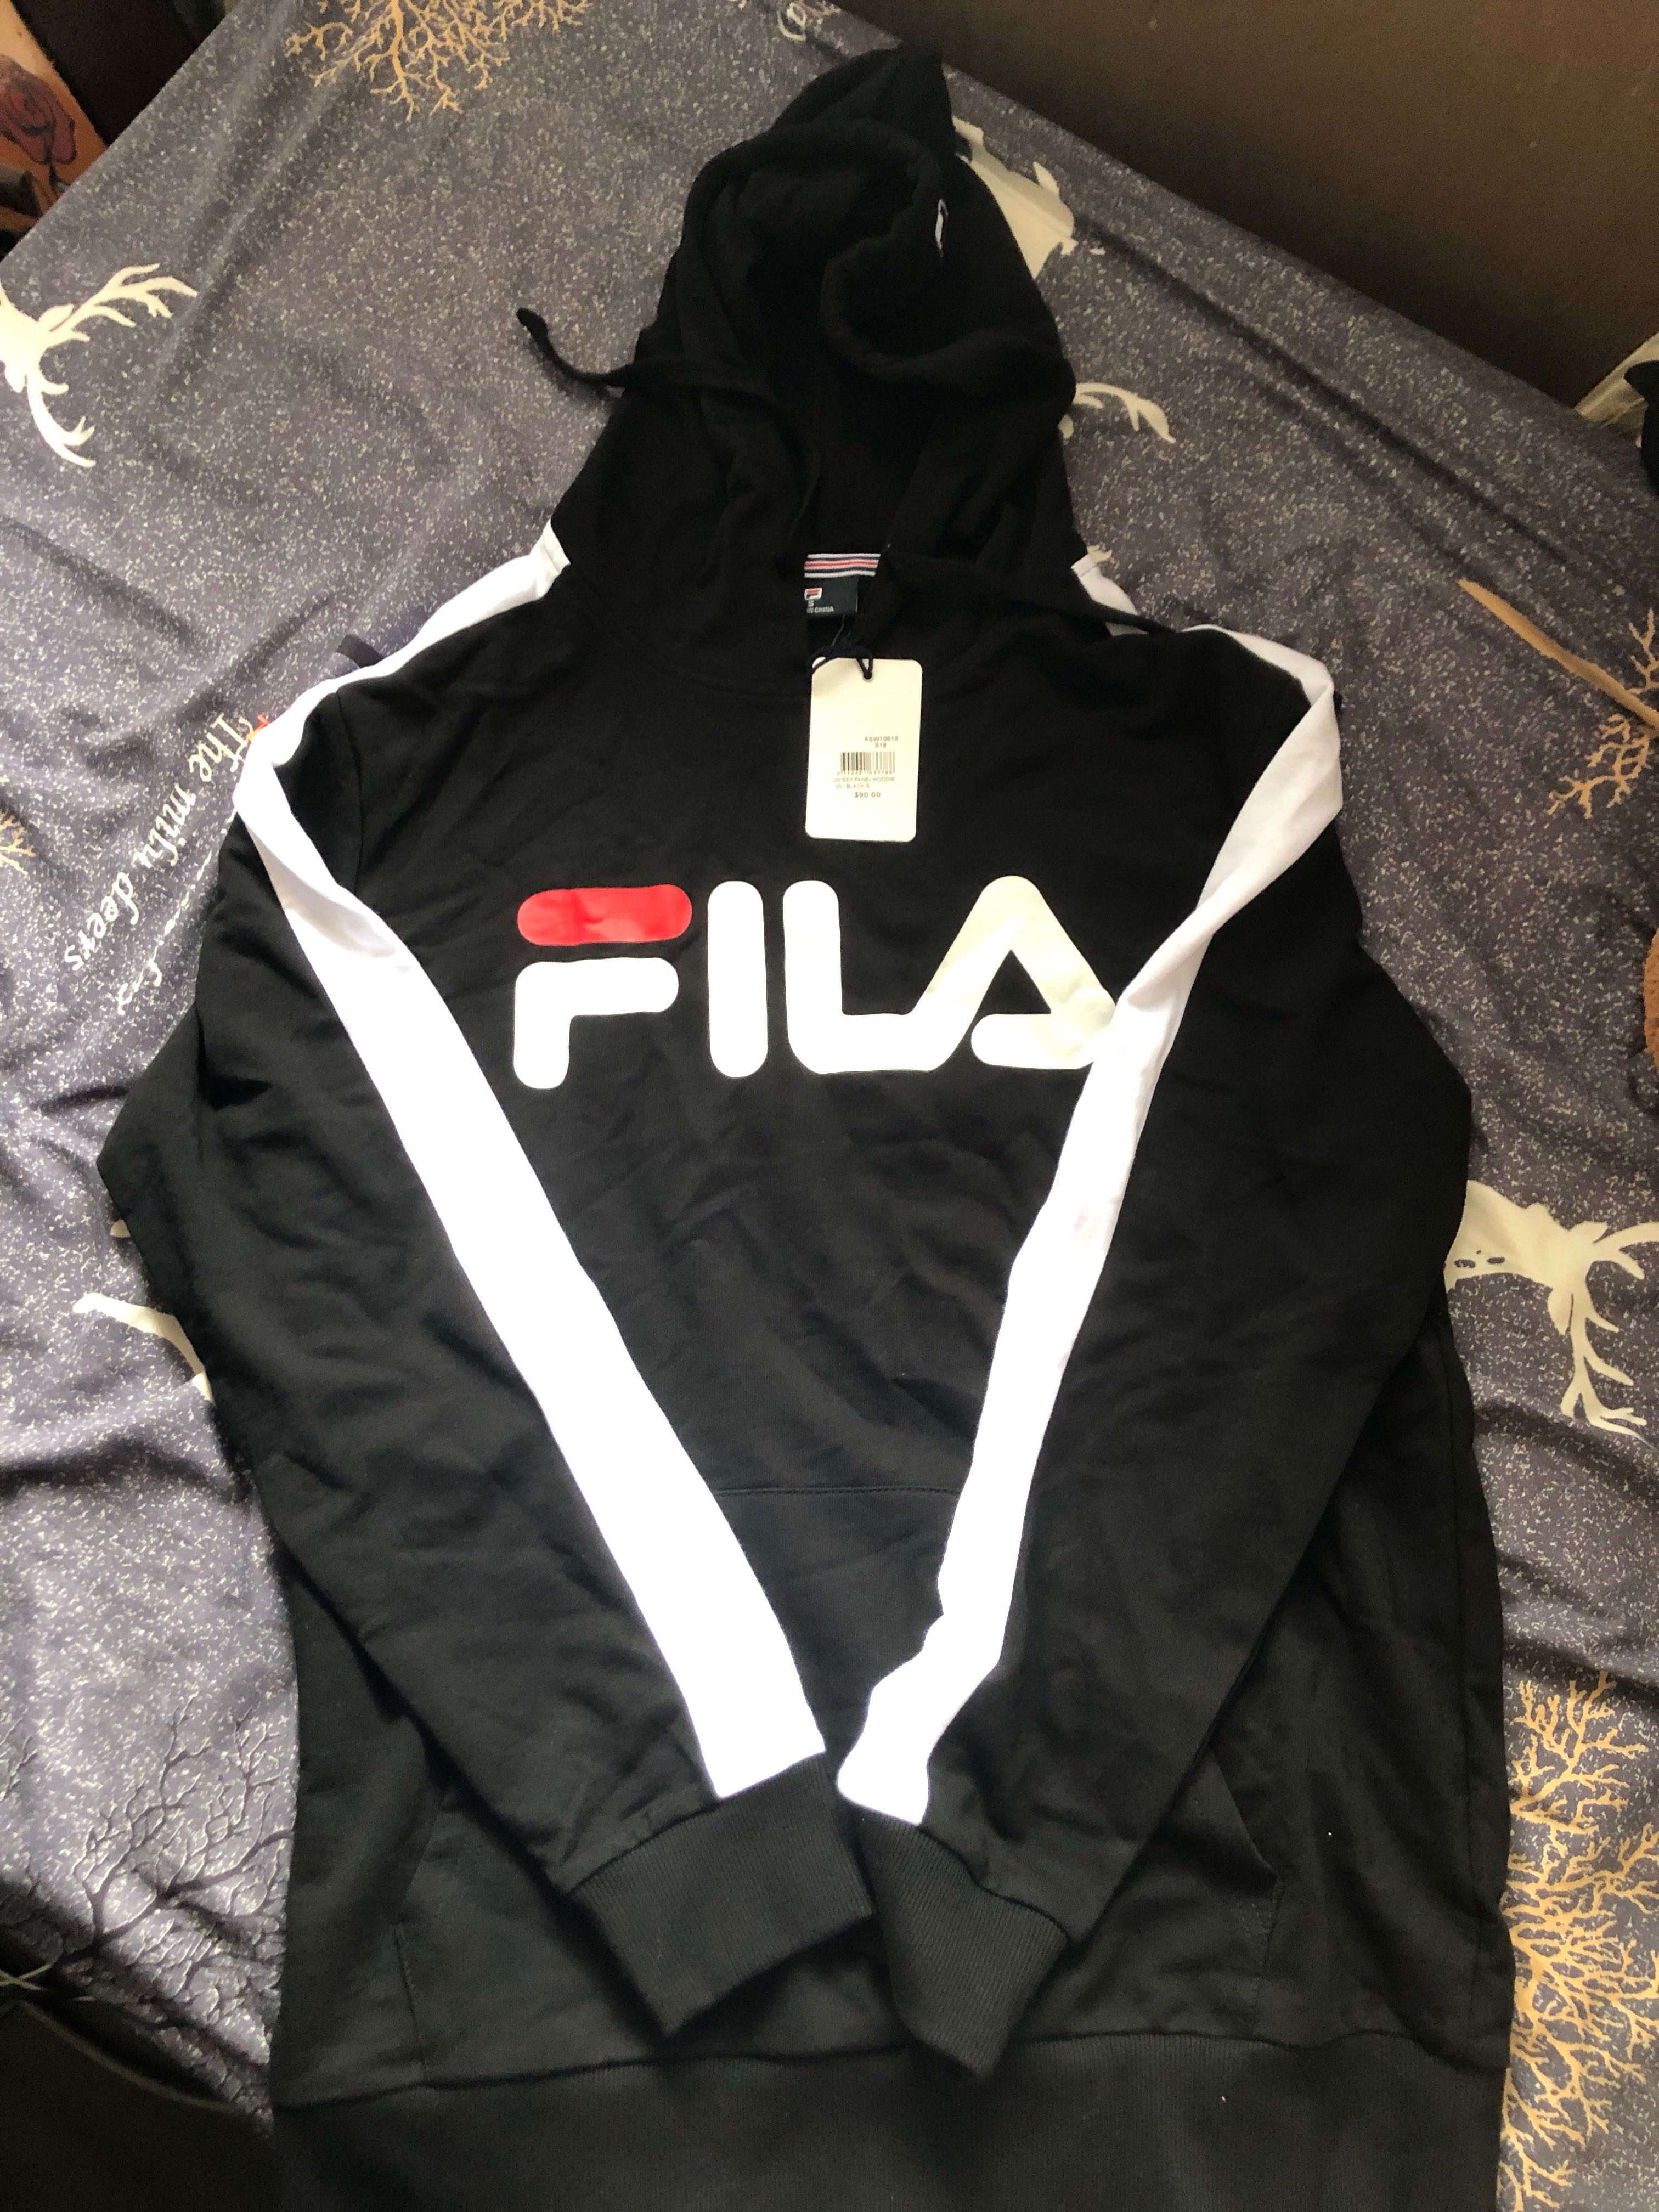 fila black and white jacket